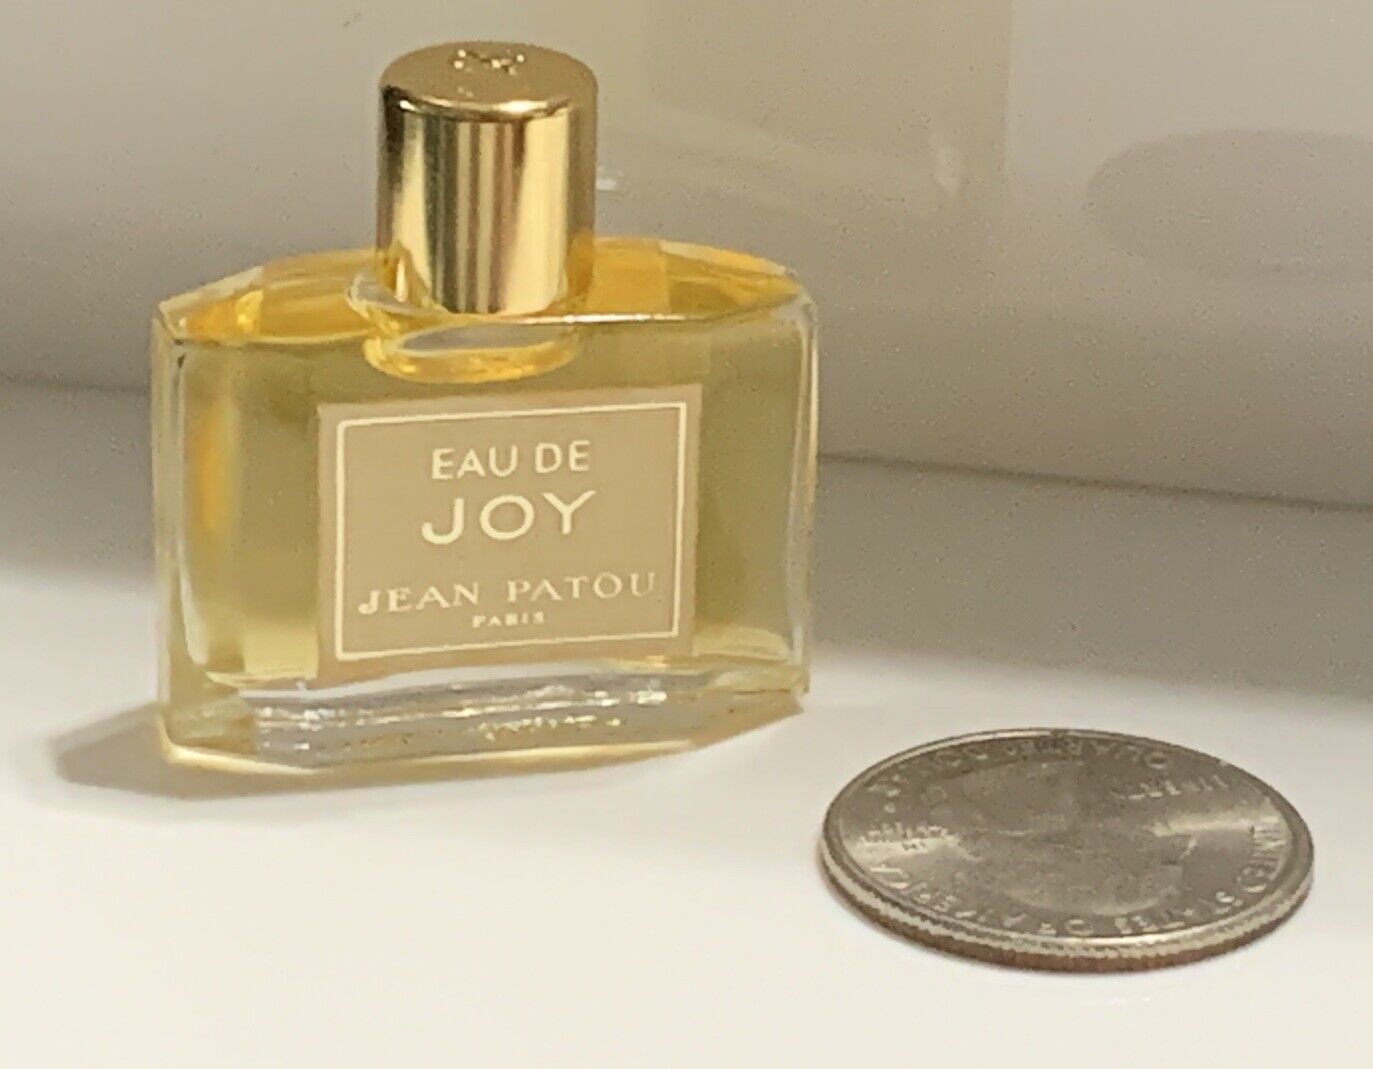 VTG EAU de Joy JEAN PATOU Womens Mini Perfume Fragrance Collectible